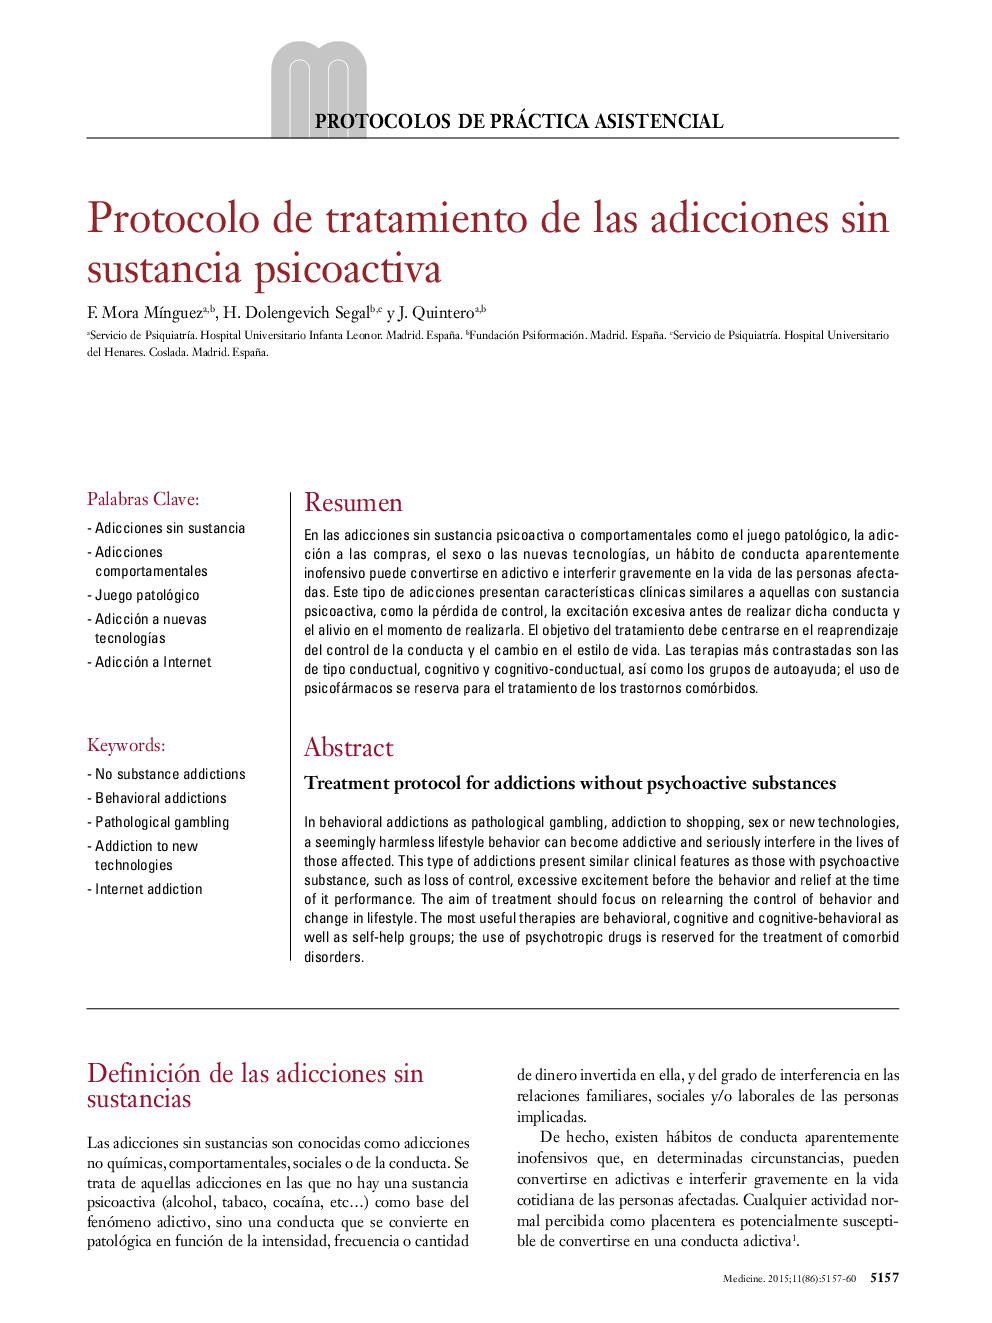 Protocolo de tratamiento de las adicciones sin sustancia psicoactiva